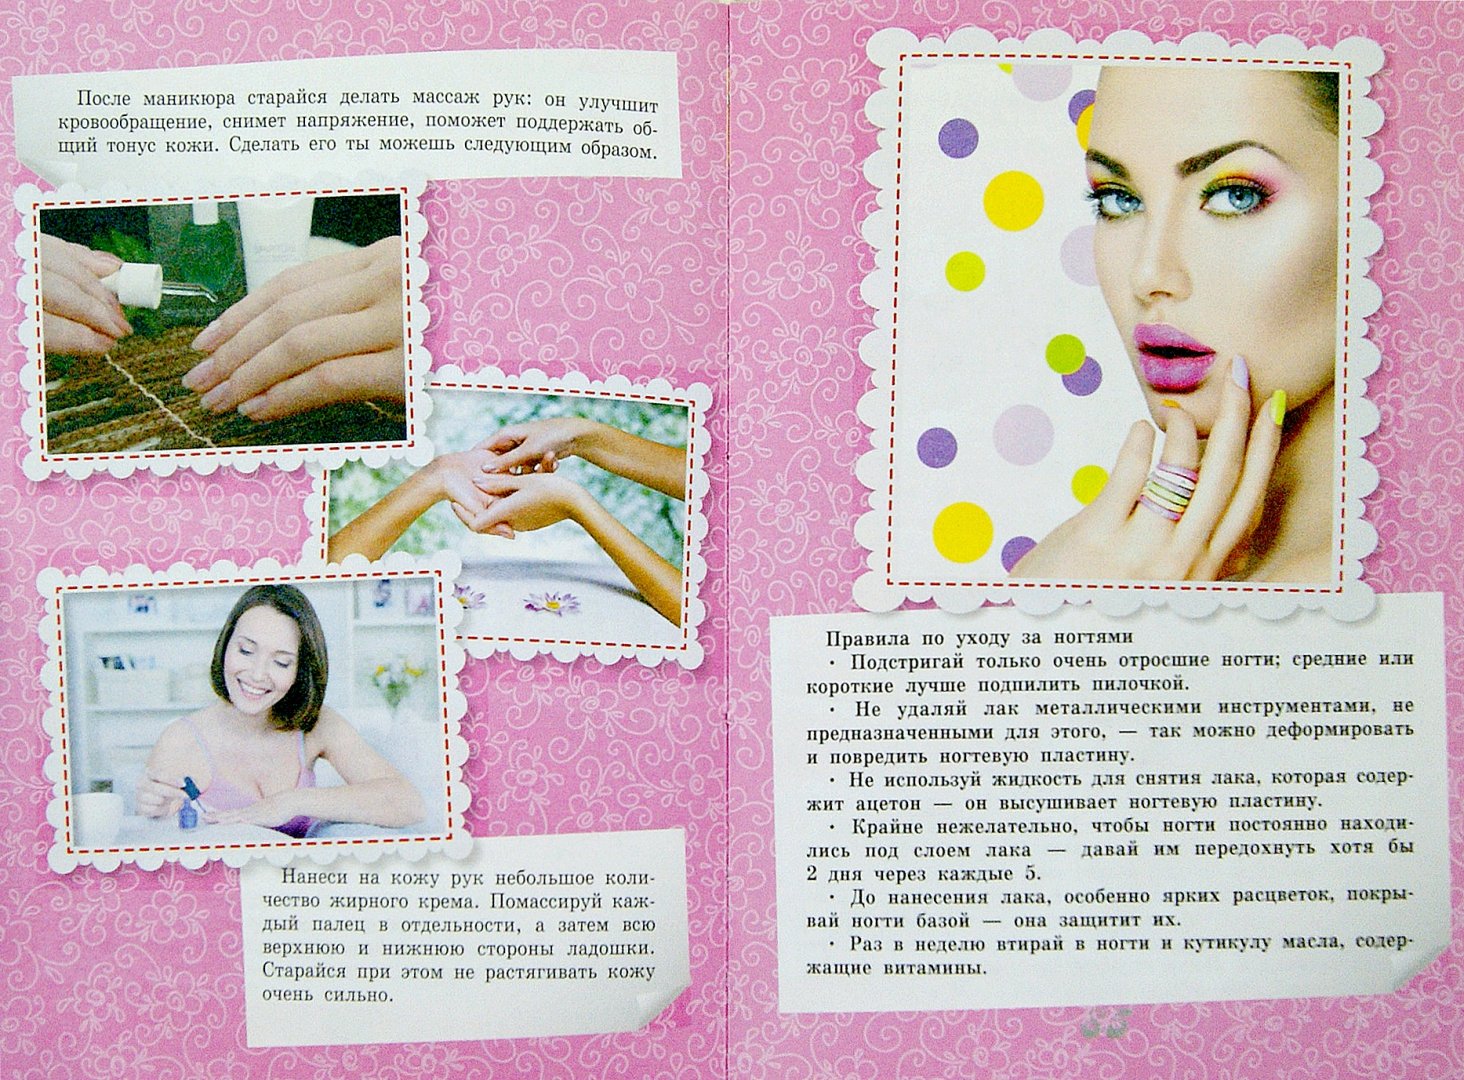 Иллюстрация 1 из 12 для Секреты красоты - Елена Хомич | Лабиринт - книги. Источник: Лабиринт